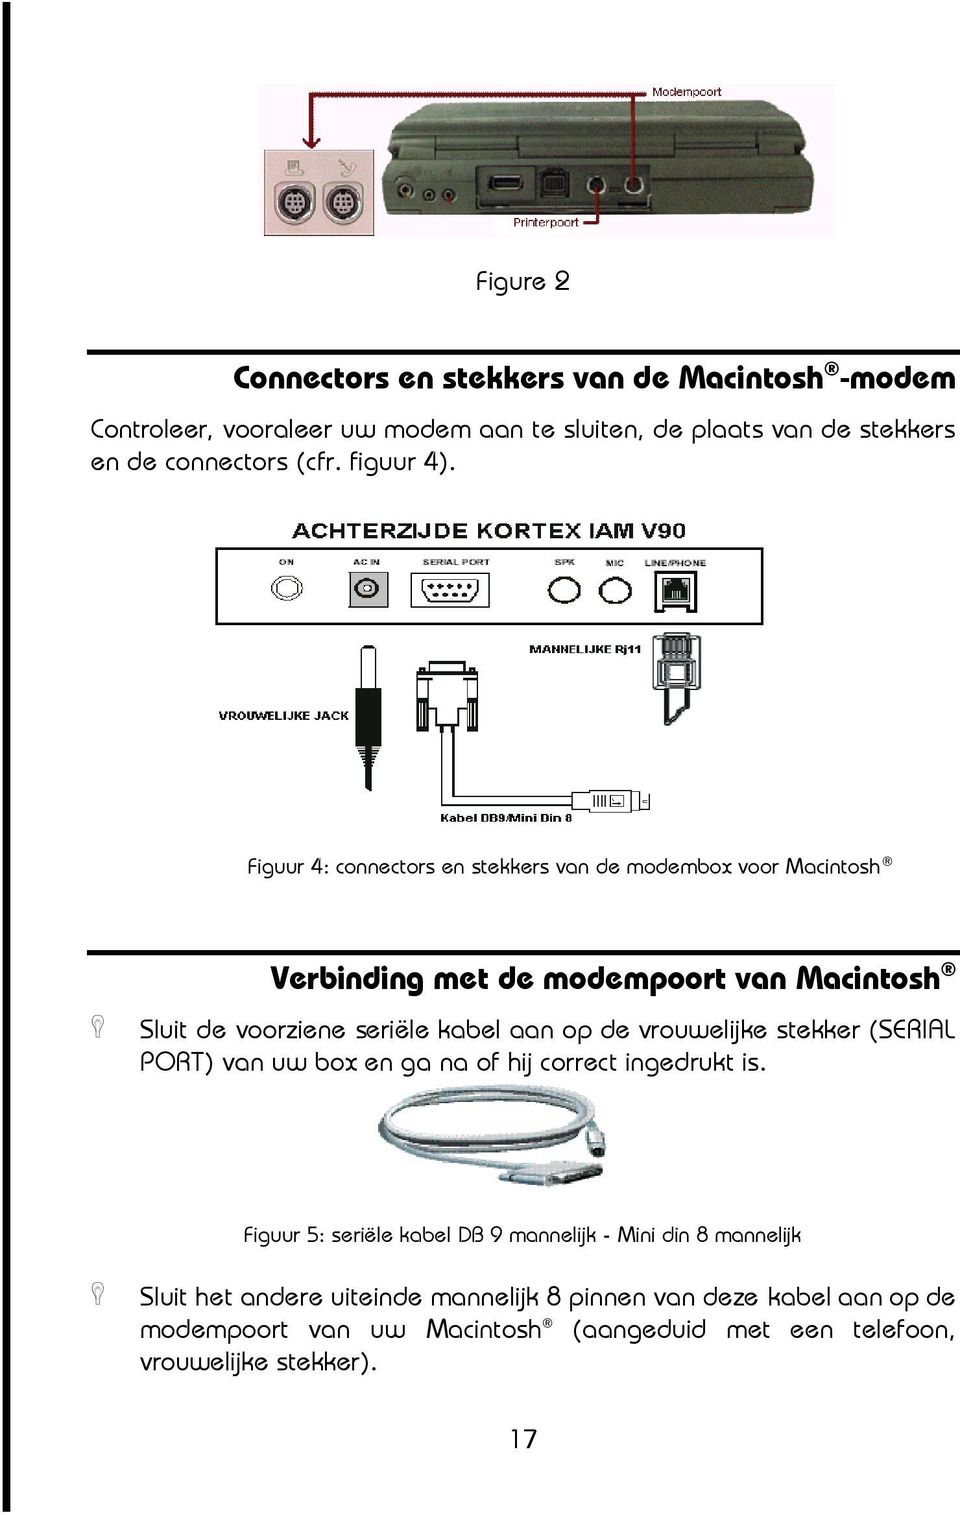 Figuur 4: connectors en stekkers van de modembox voor Macintosh Verbinding met de modempoort van Macintosh @ Sluit de voorziene seriële kabel aan op de